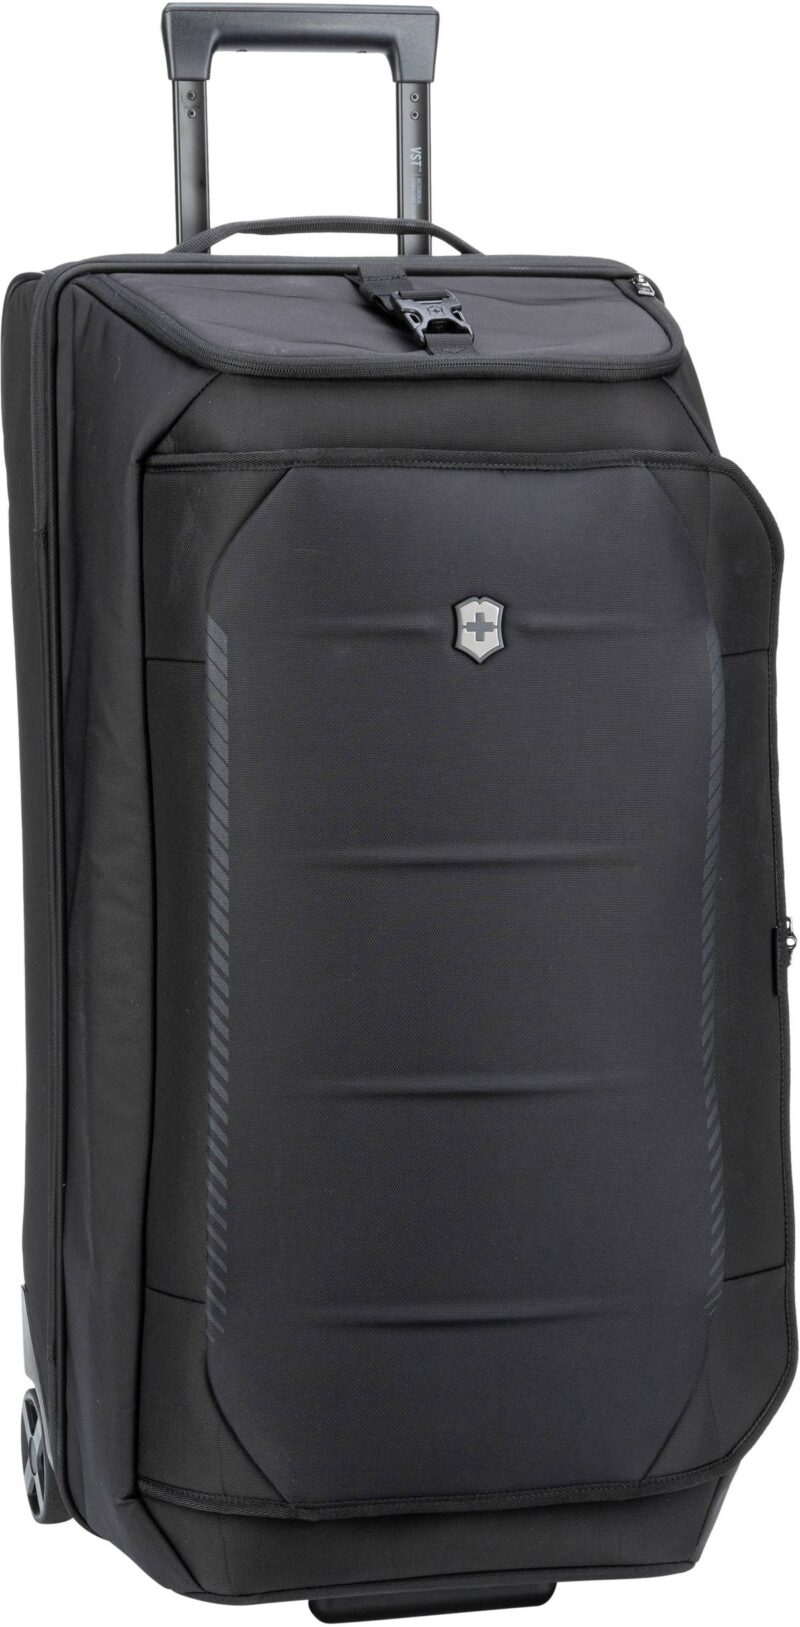 Mit dem geräumigen Koffer von Victorinox starten Sie bestens organisiert in den Urlaub. Dank der 2 Rollen lässt er sich unterwegs komfortabel transportieren. Volumen: 87 Liter.